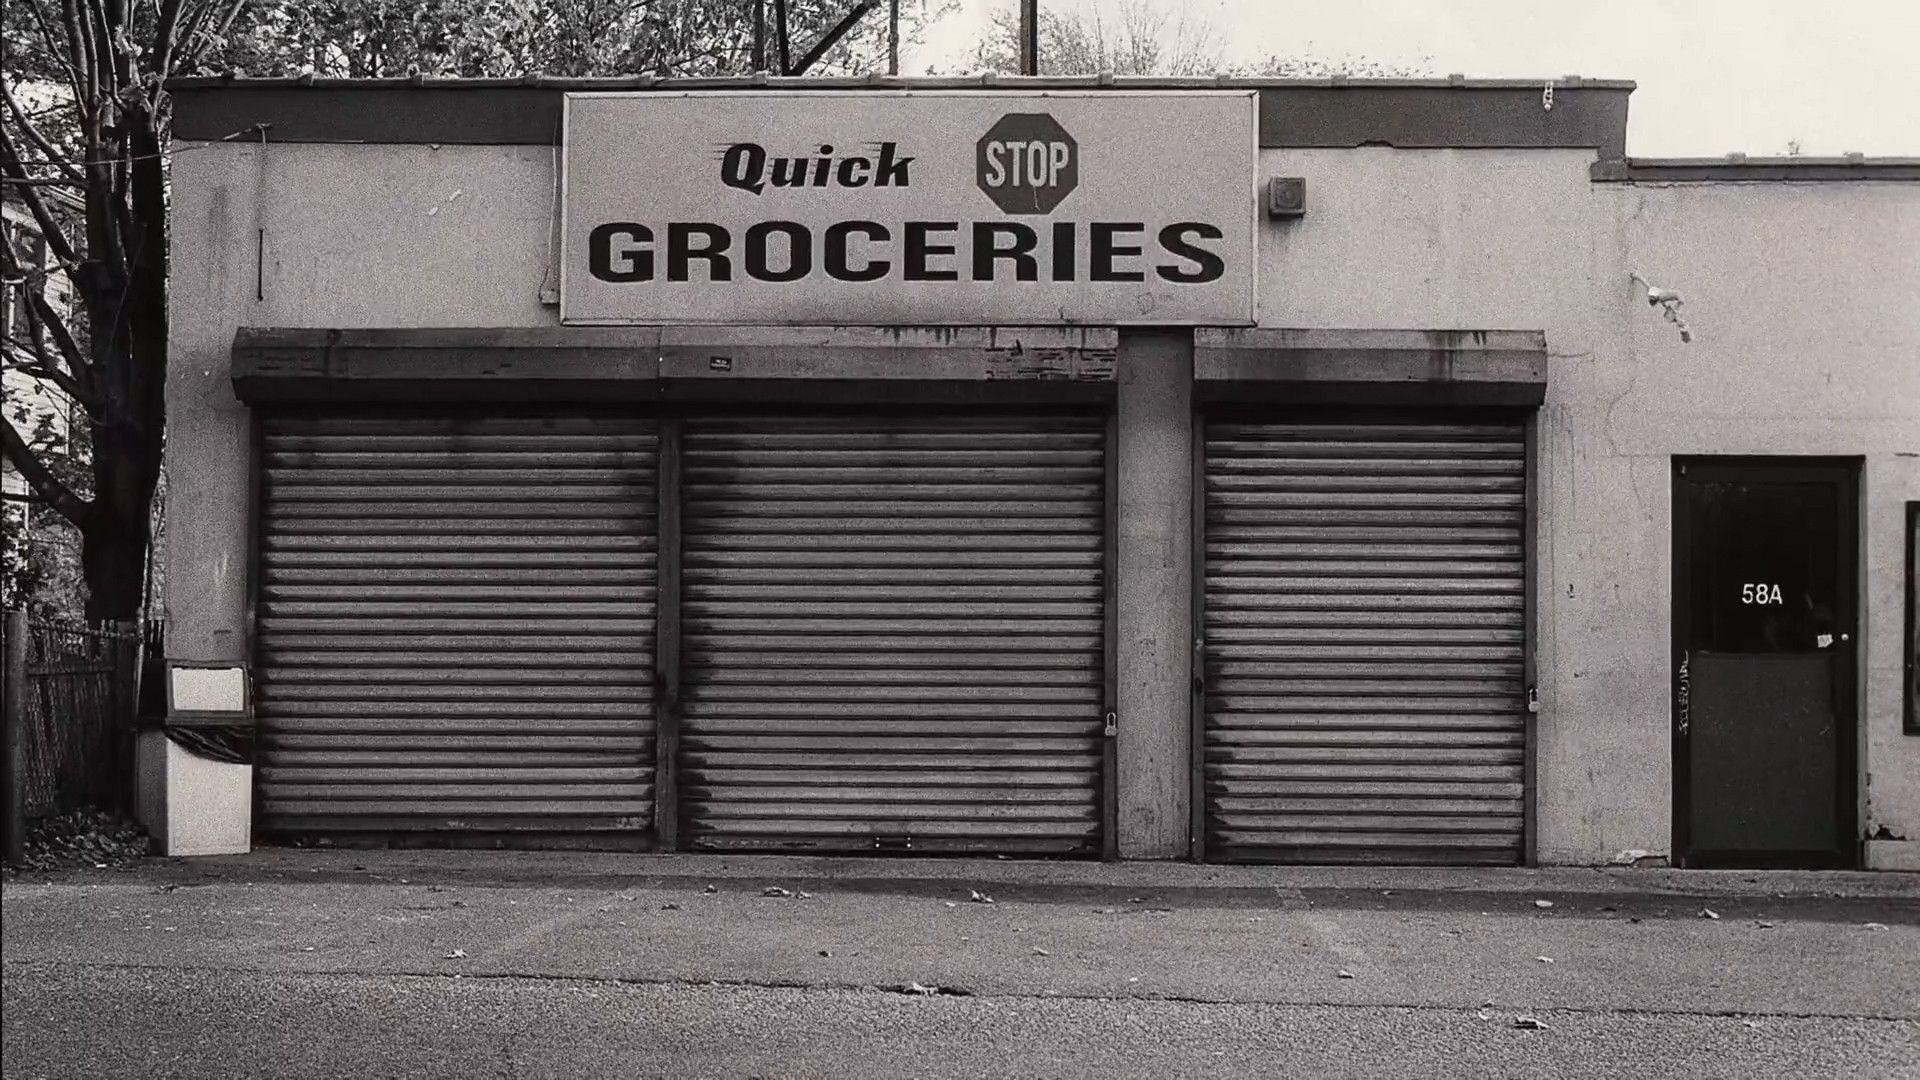 Quick Stop Groceries [1920x1080]